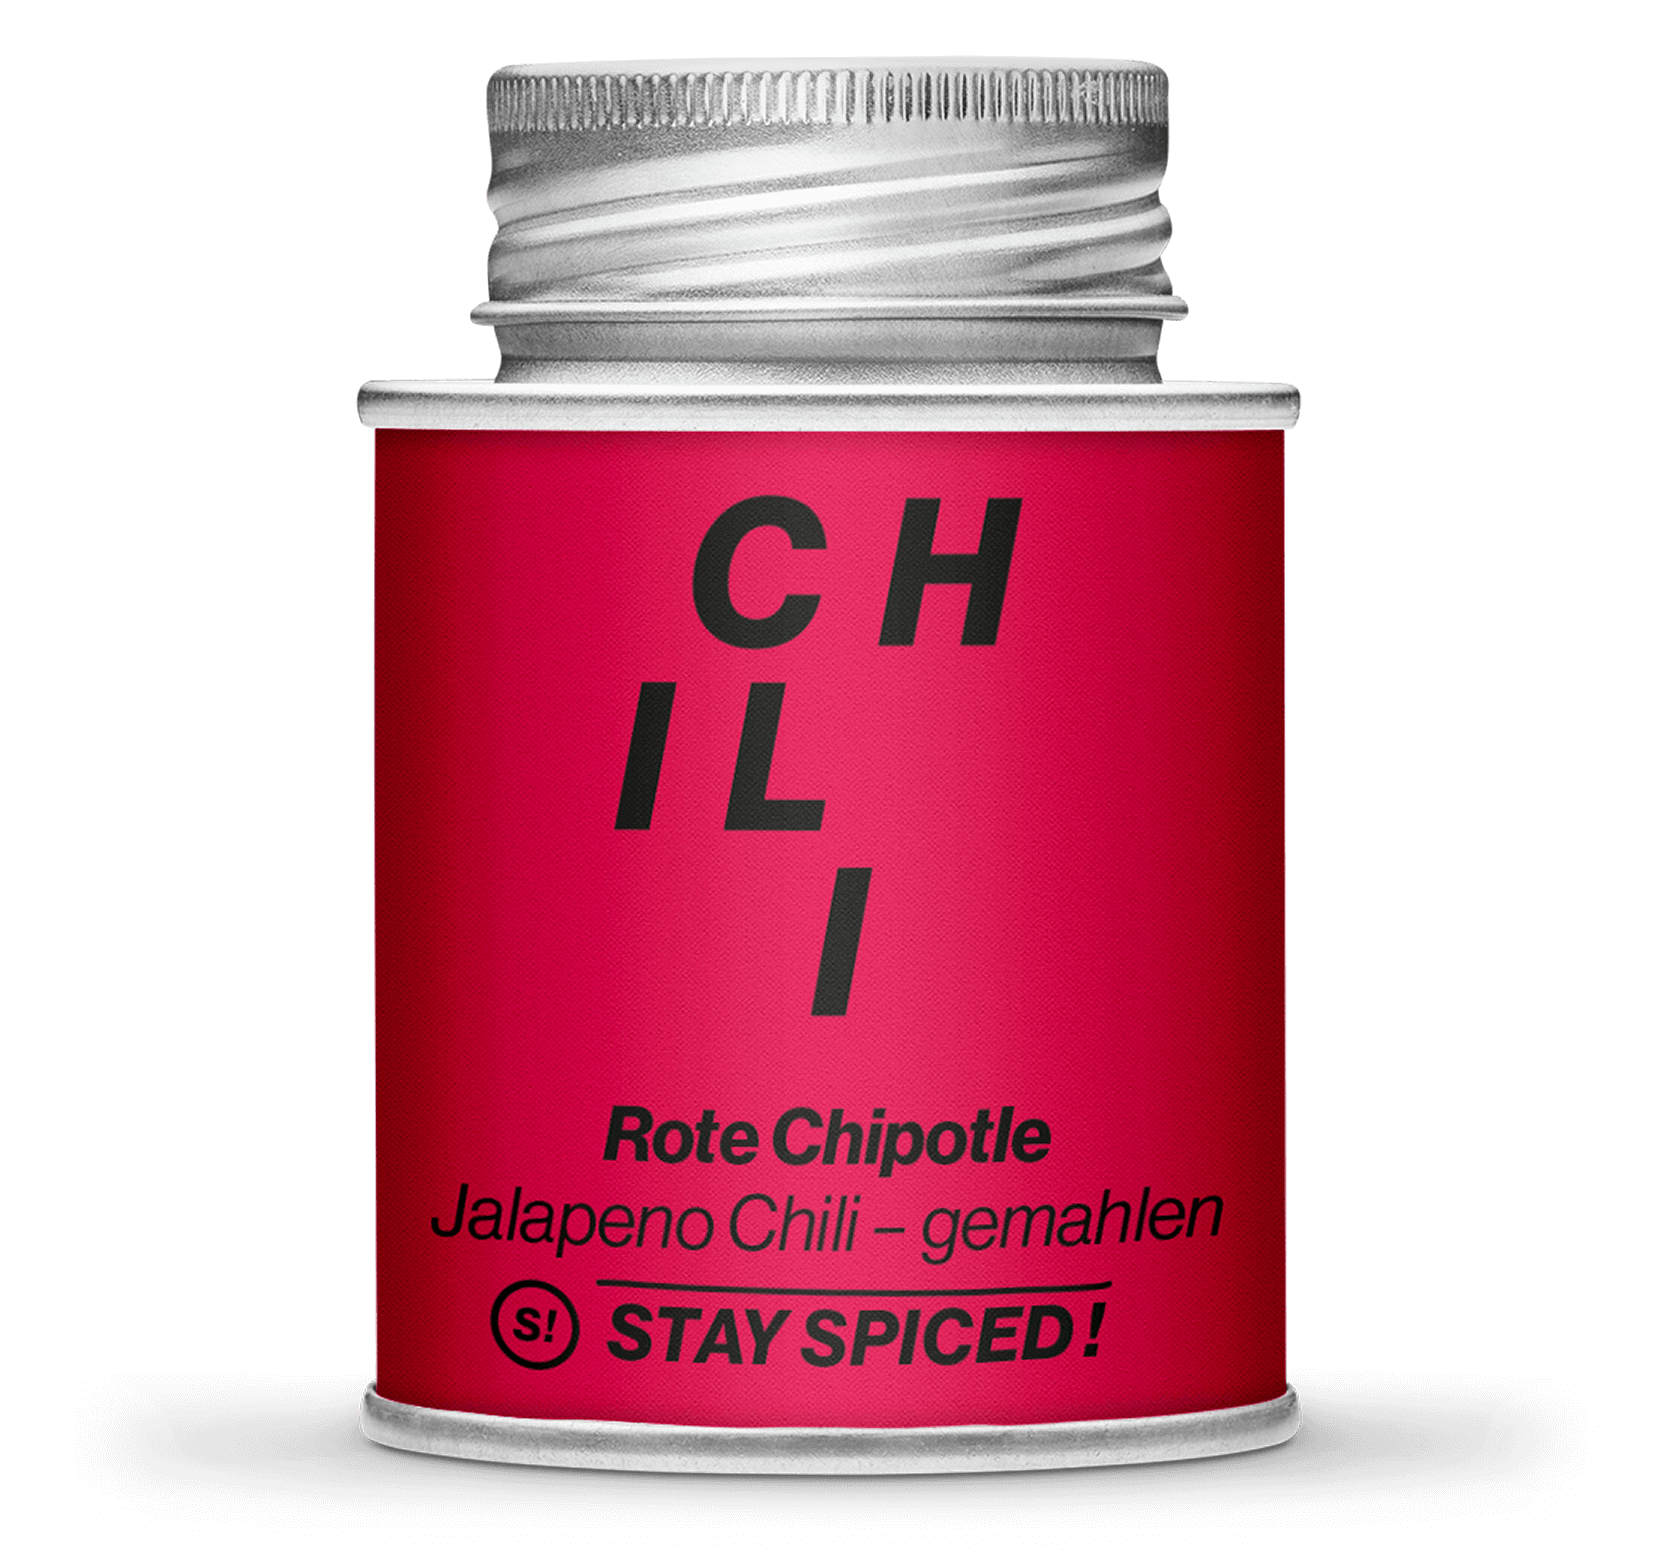 Jalapeno-Chili rot "Chipotled" gemahlen